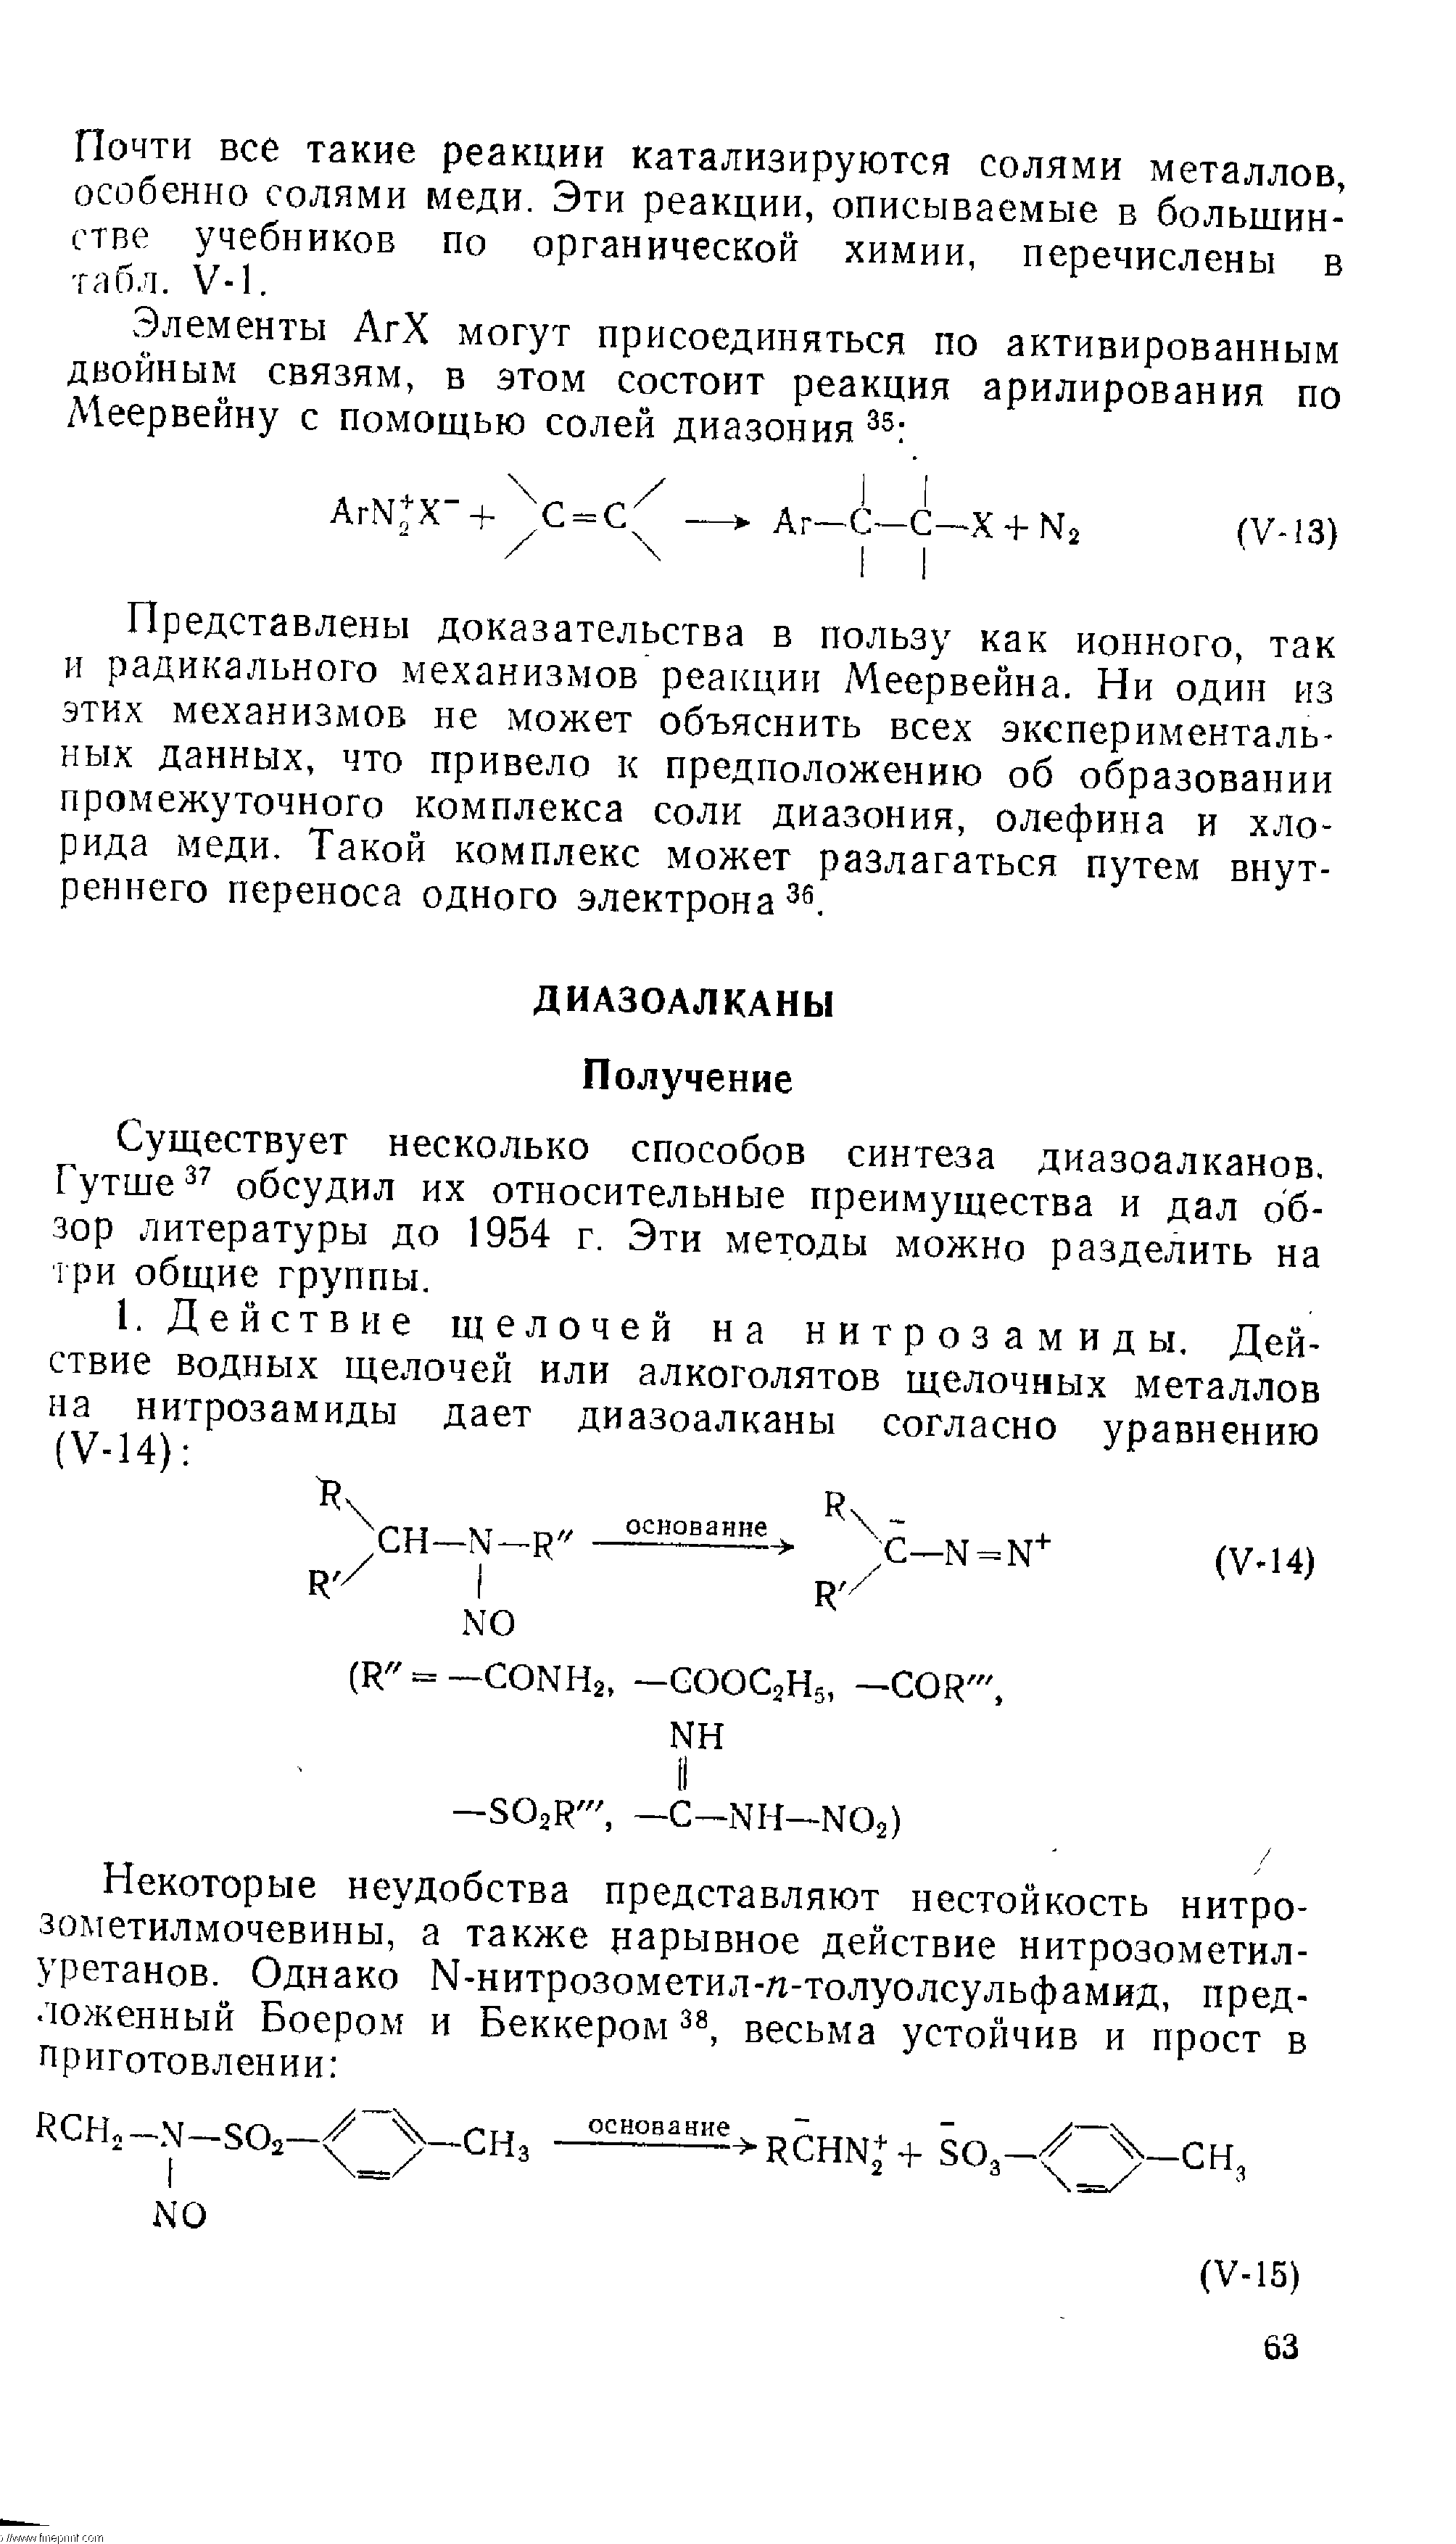 Существует несколько способов синтеза диазоалканов. Гутше обсудил их относительные преимущества и дал обзор литературы до 1954 г. Эти методы можно разделить на три общие группы.